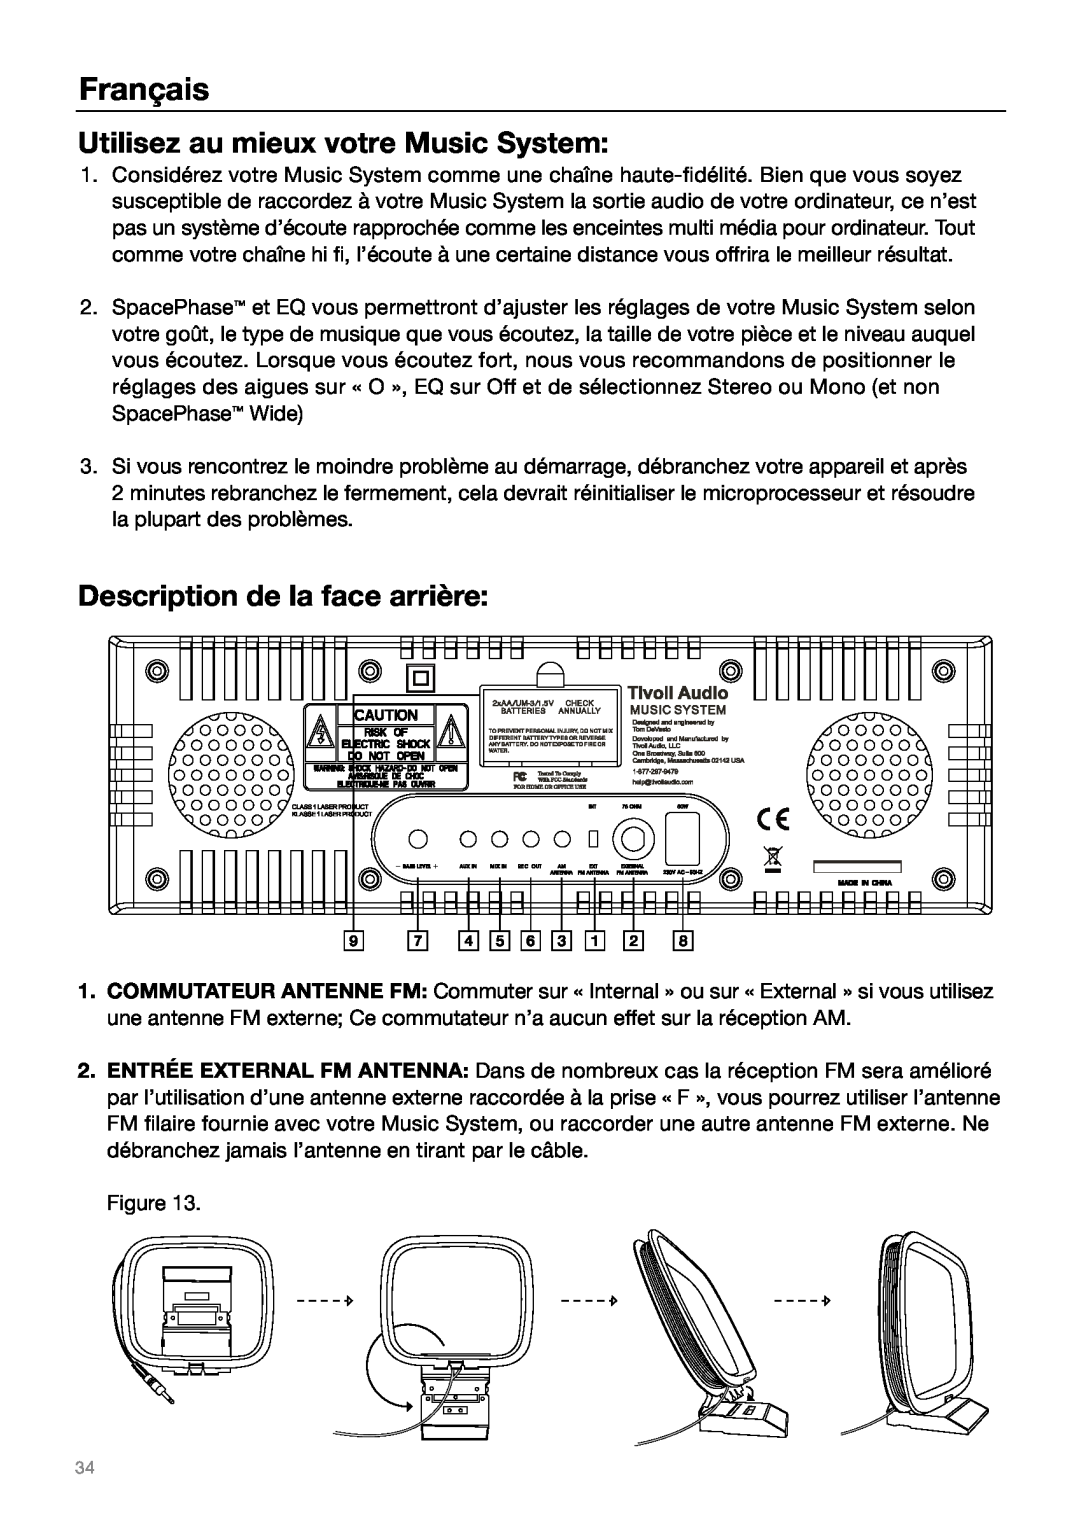 Tivoli Audio MUSIC SYSTEM owner manual Utilisez au mieux votre Music System, Description de la face arrière, Français 